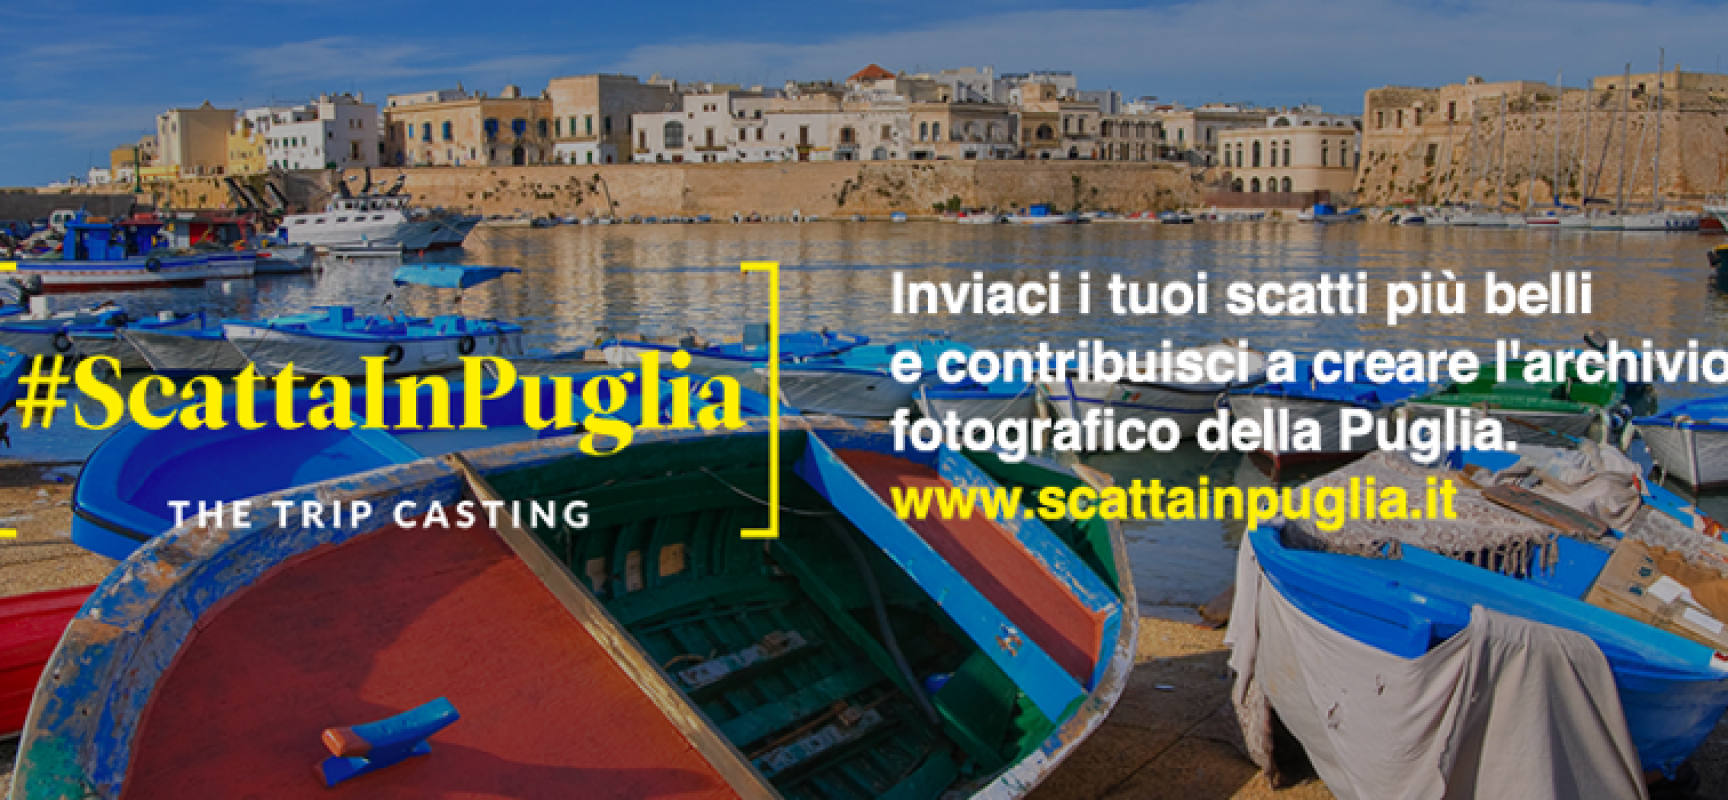 #ScattaInPuglia, il contest per fotografi appassionati della Terra di Puglia / DETTAGLI